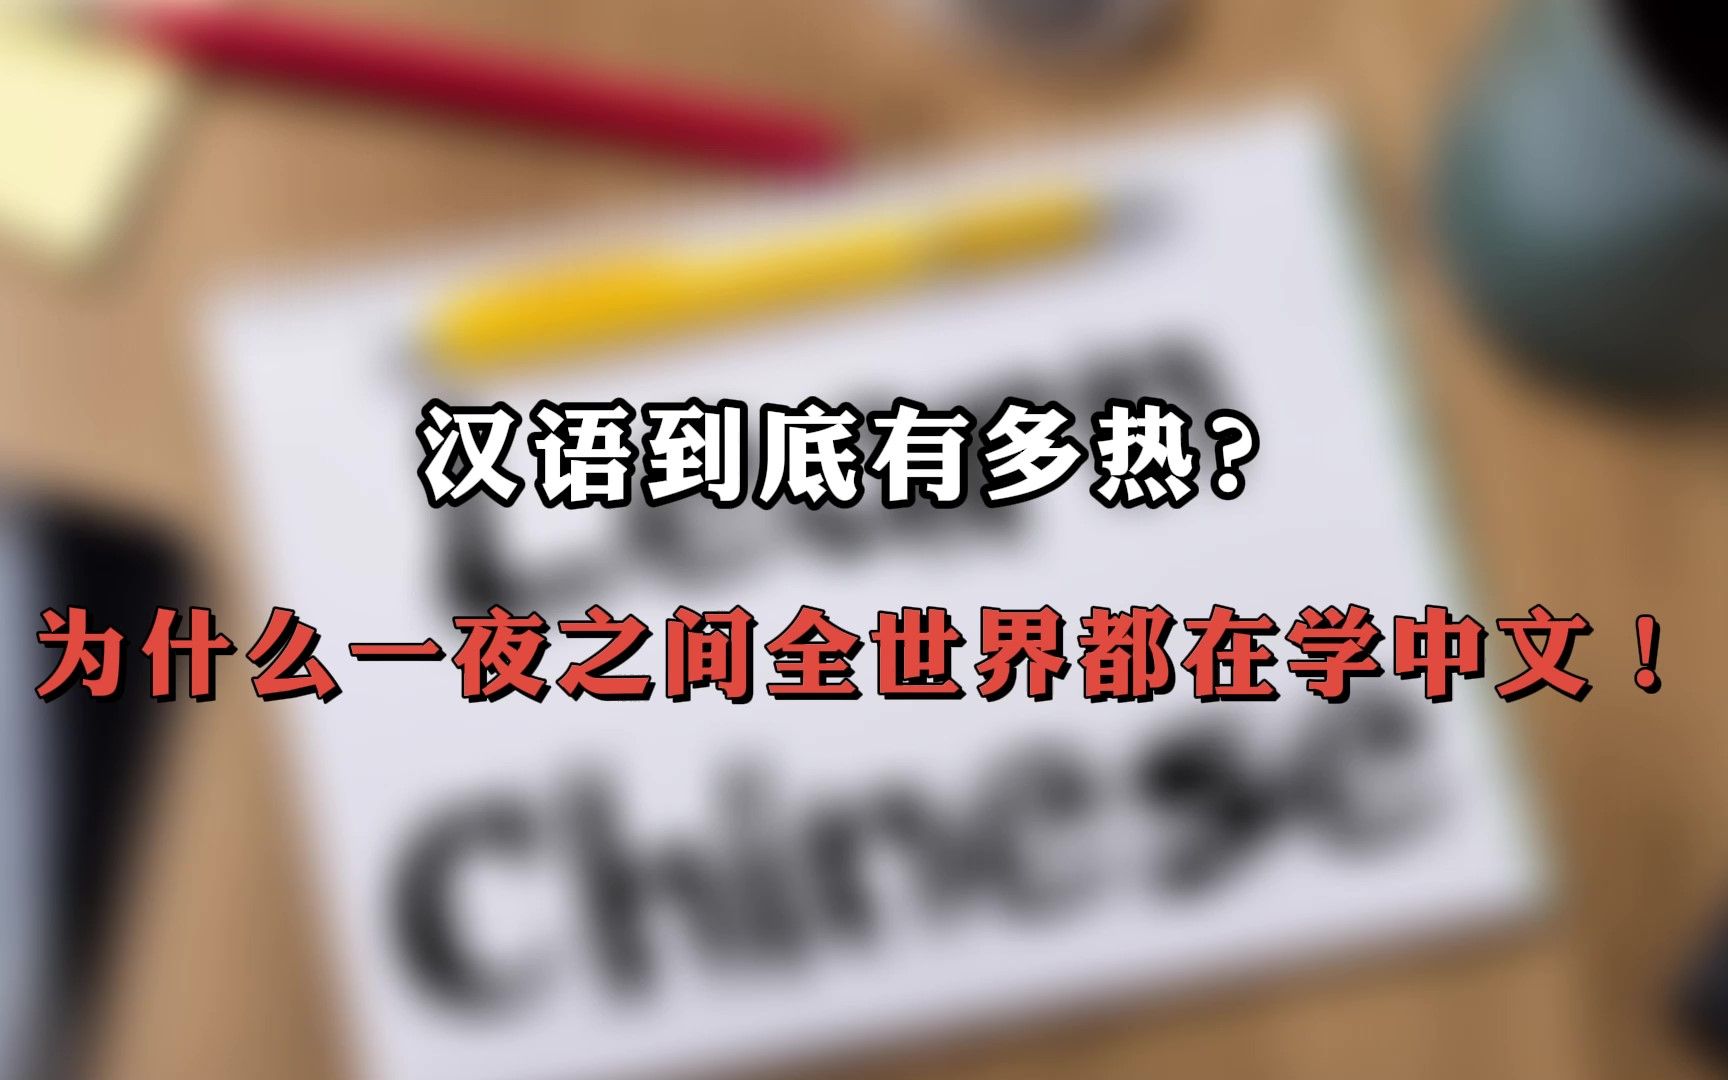 全世界都在学中国话图片